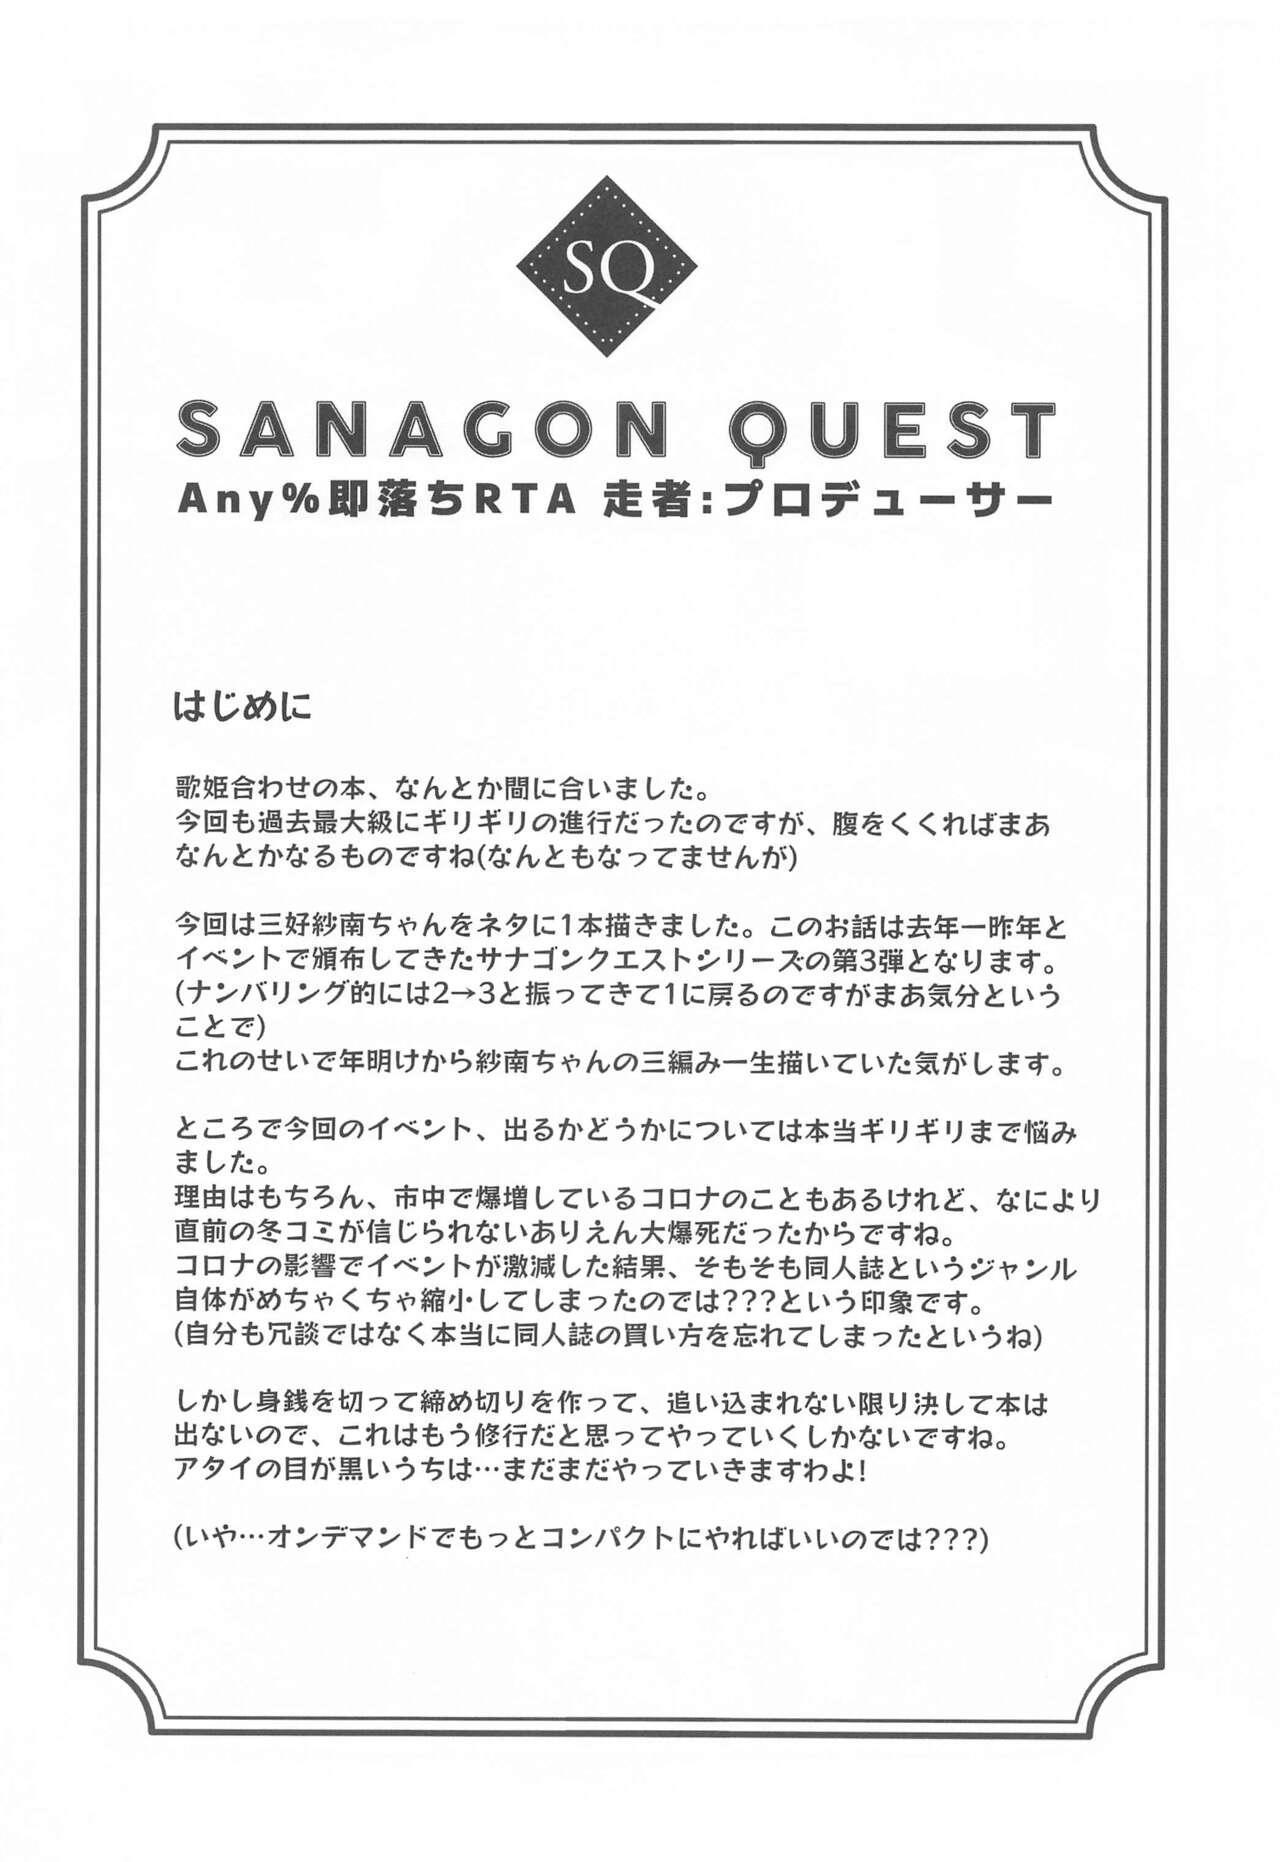 Sanagon Quest Any% Sokuochi RTA Sousha: Producer 2